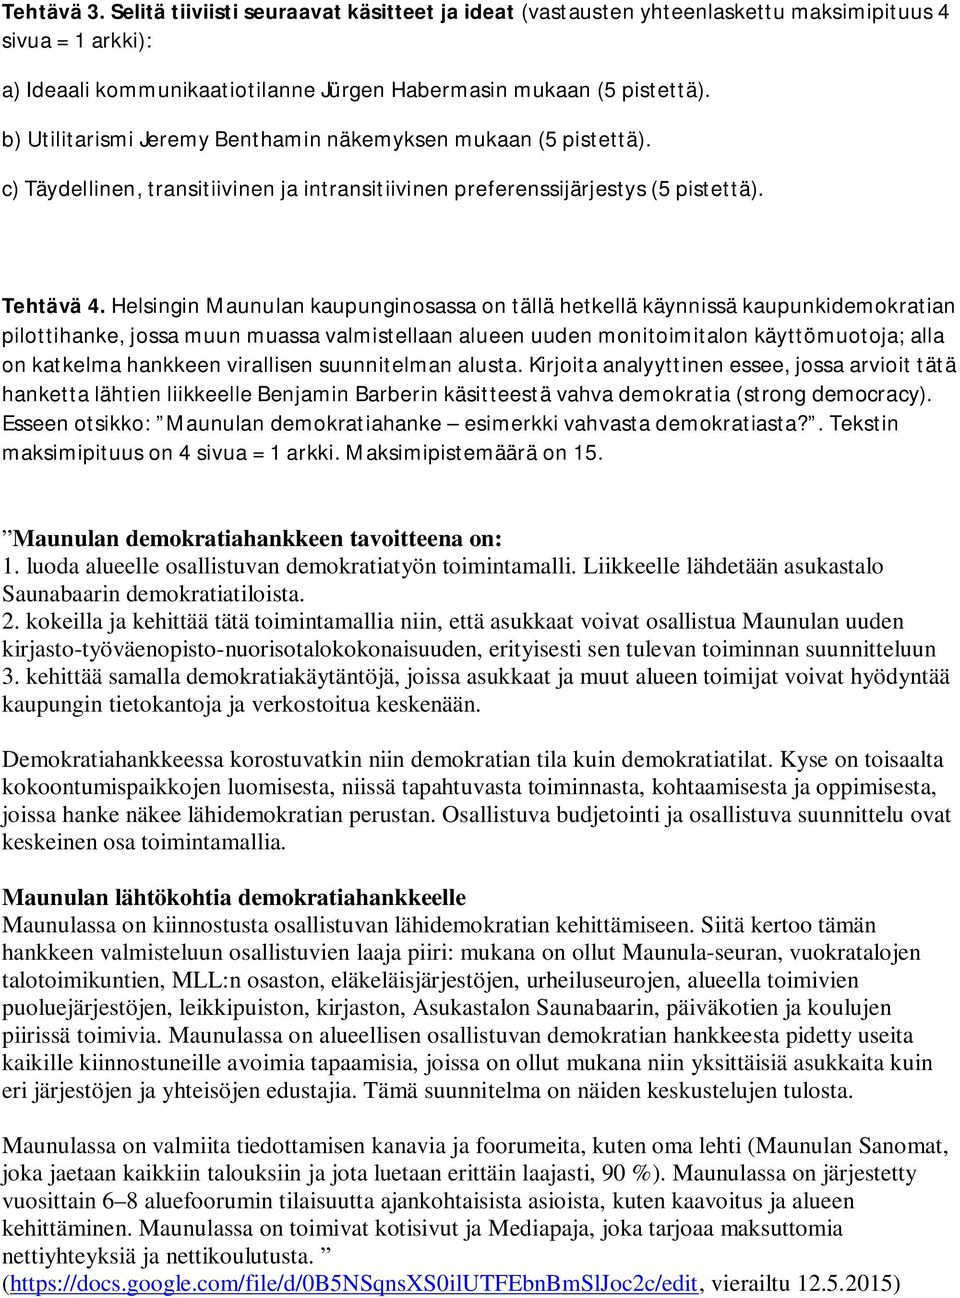 Helsingin Maunulan kaupunginosassa on tällä hetkellä käynnissä kaupunkidemokratian pilottihanke, jossa muun muassa valmistellaan alueen uuden monitoimitalon käyttömuotoja; alla on katkelma hankkeen